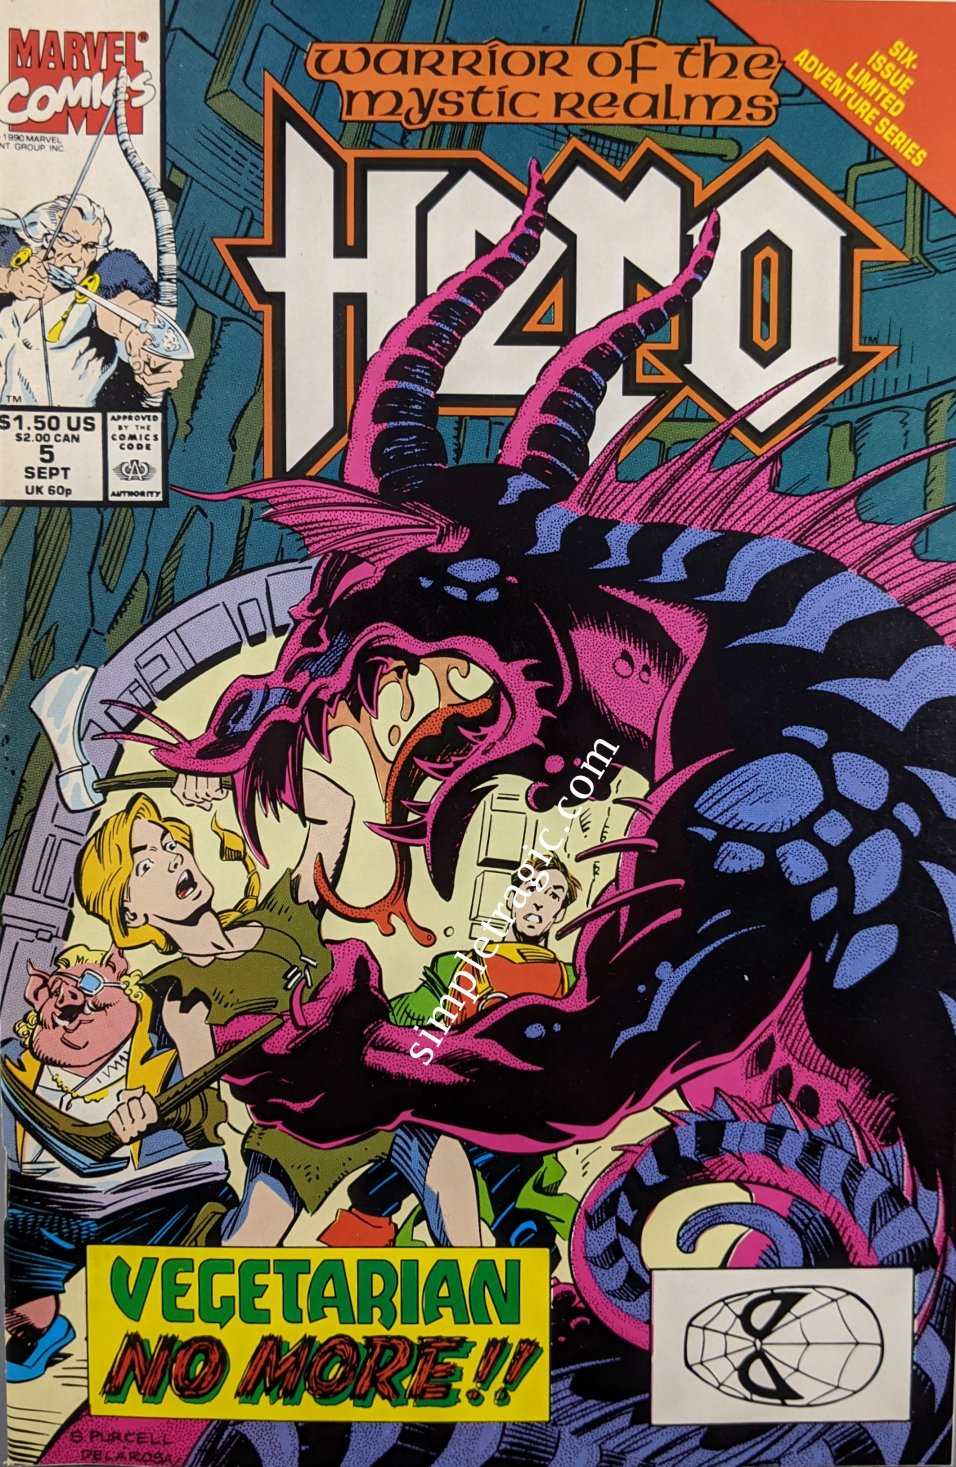 Hero (1990) #5 (of 6)